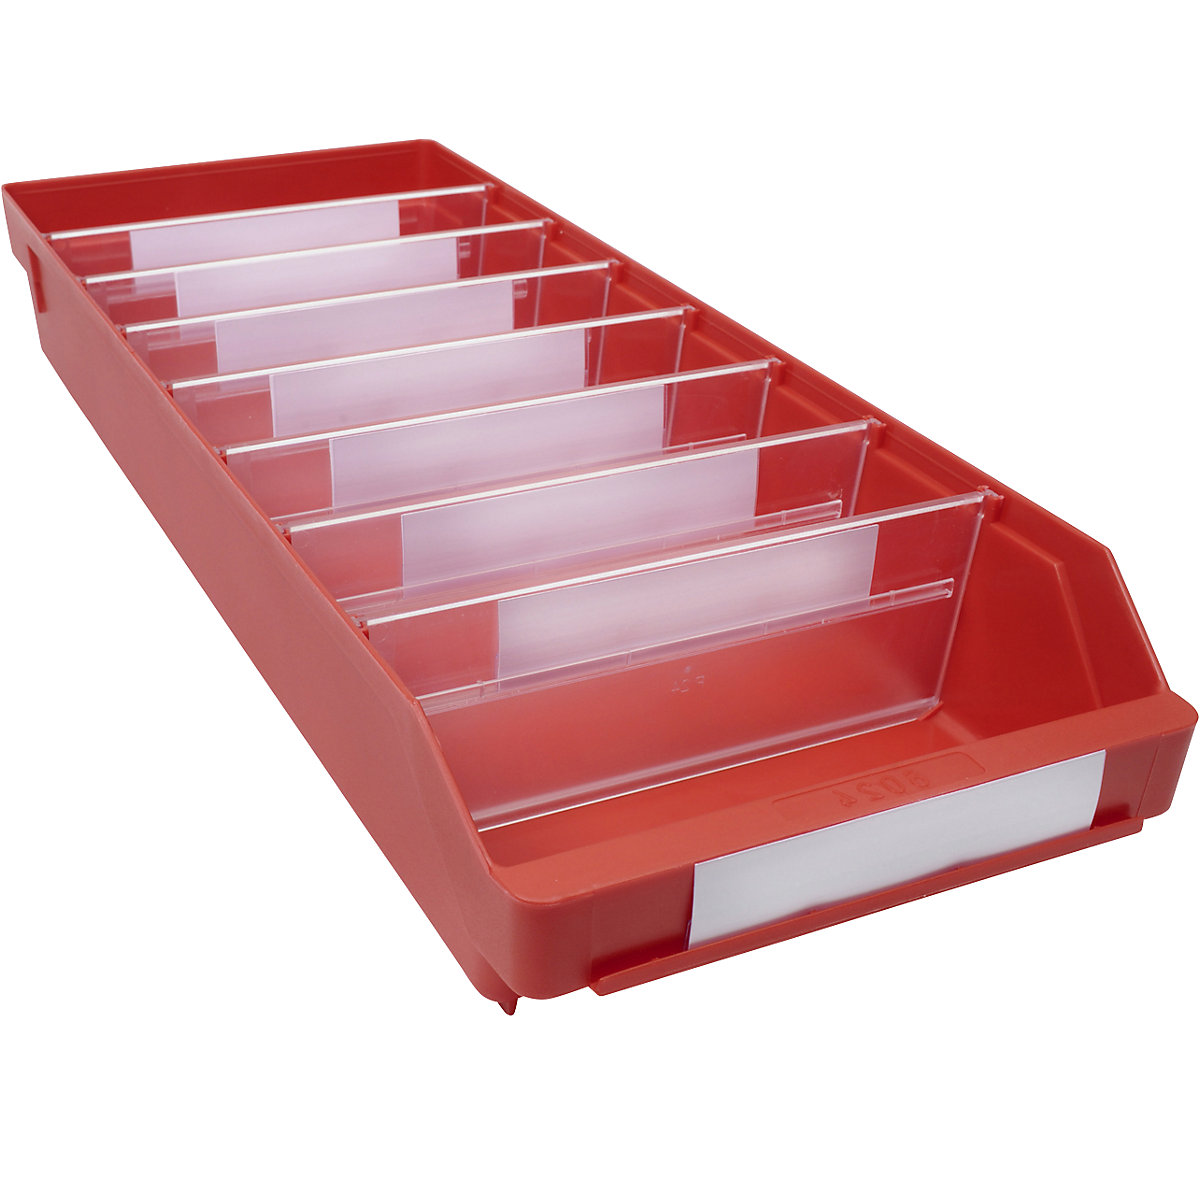 Regalkasten aus hochschlagfestem Polypropylen STEMO, rot, LxBxH 600 x 240 x 95 mm, VE 15 Stk-5